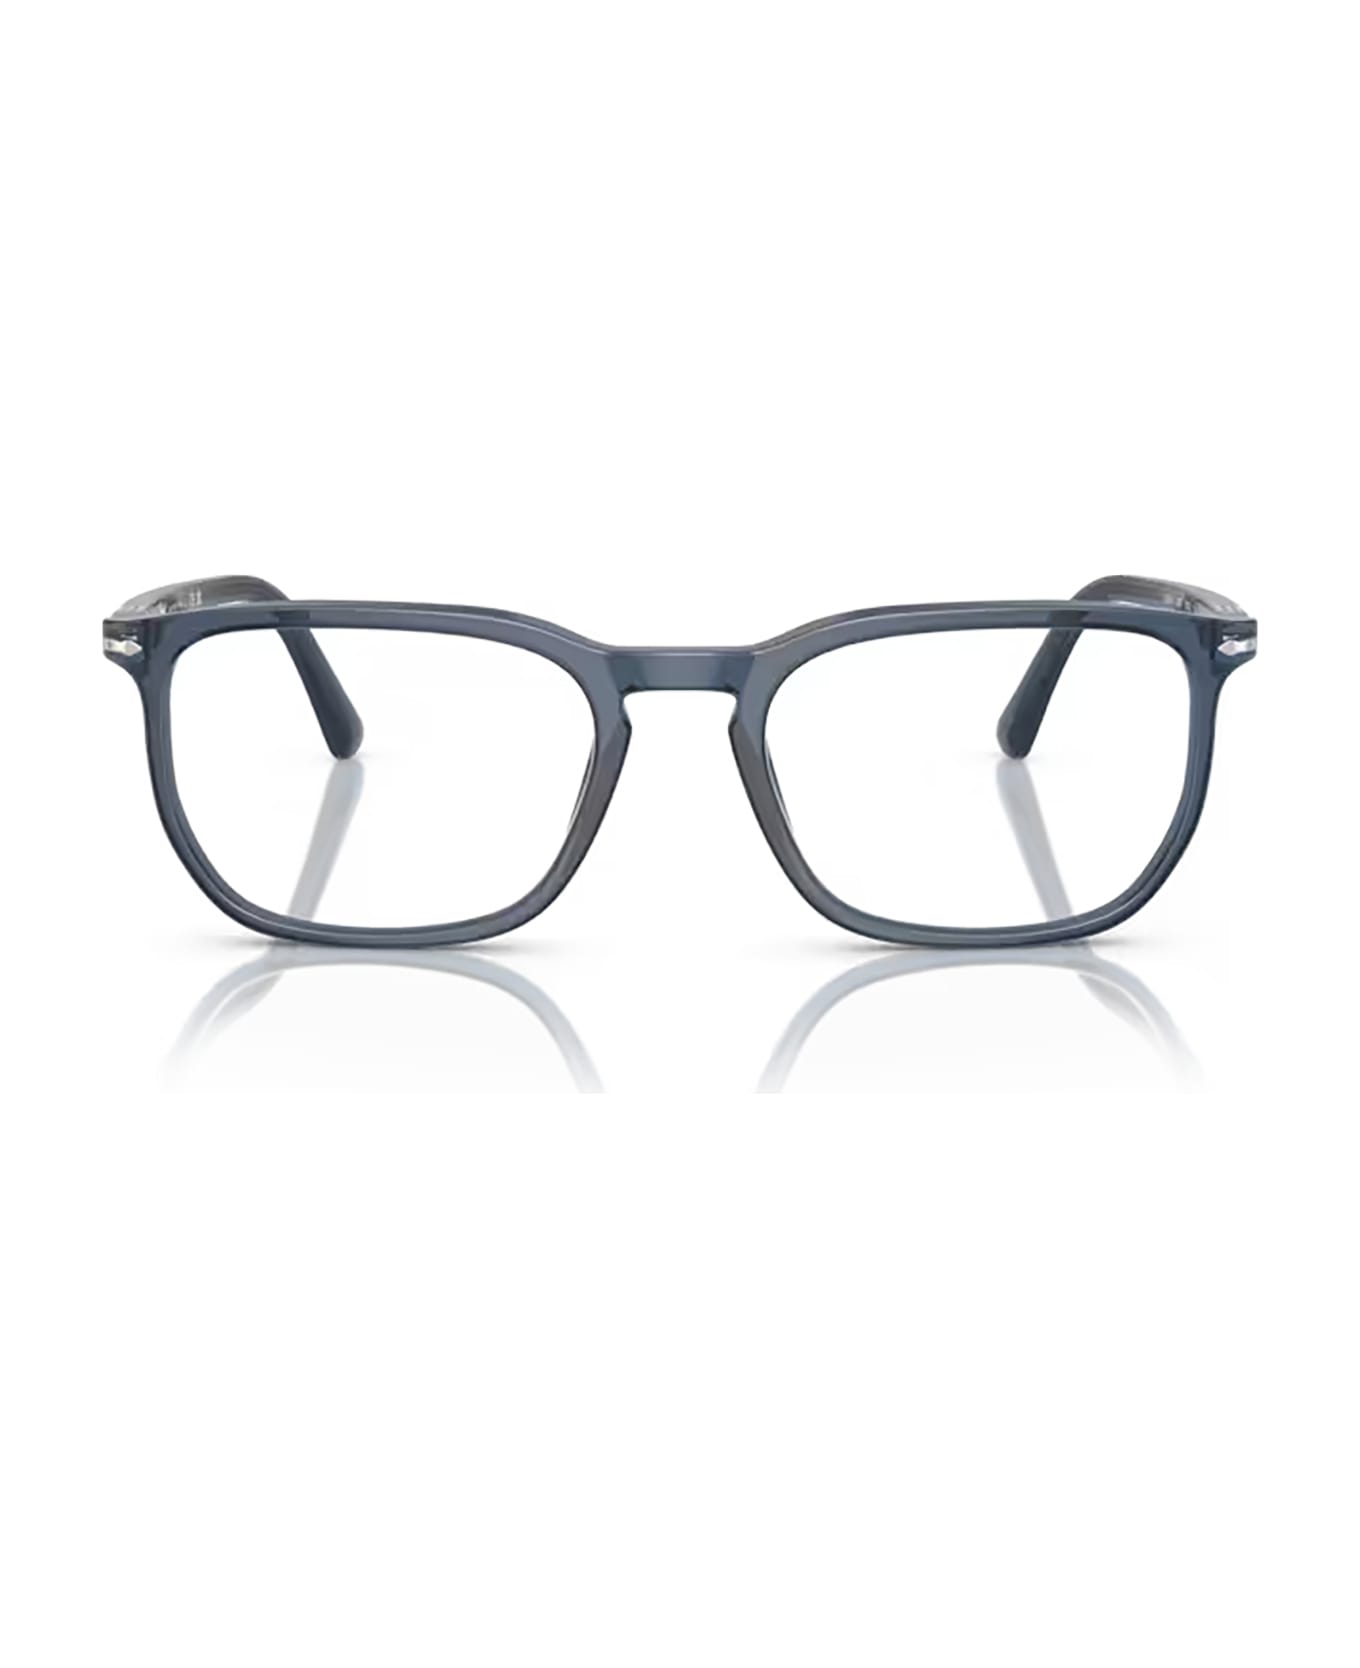 Persol Po3339v Transparent Blue Glasses - Transparent Blue アイウェア